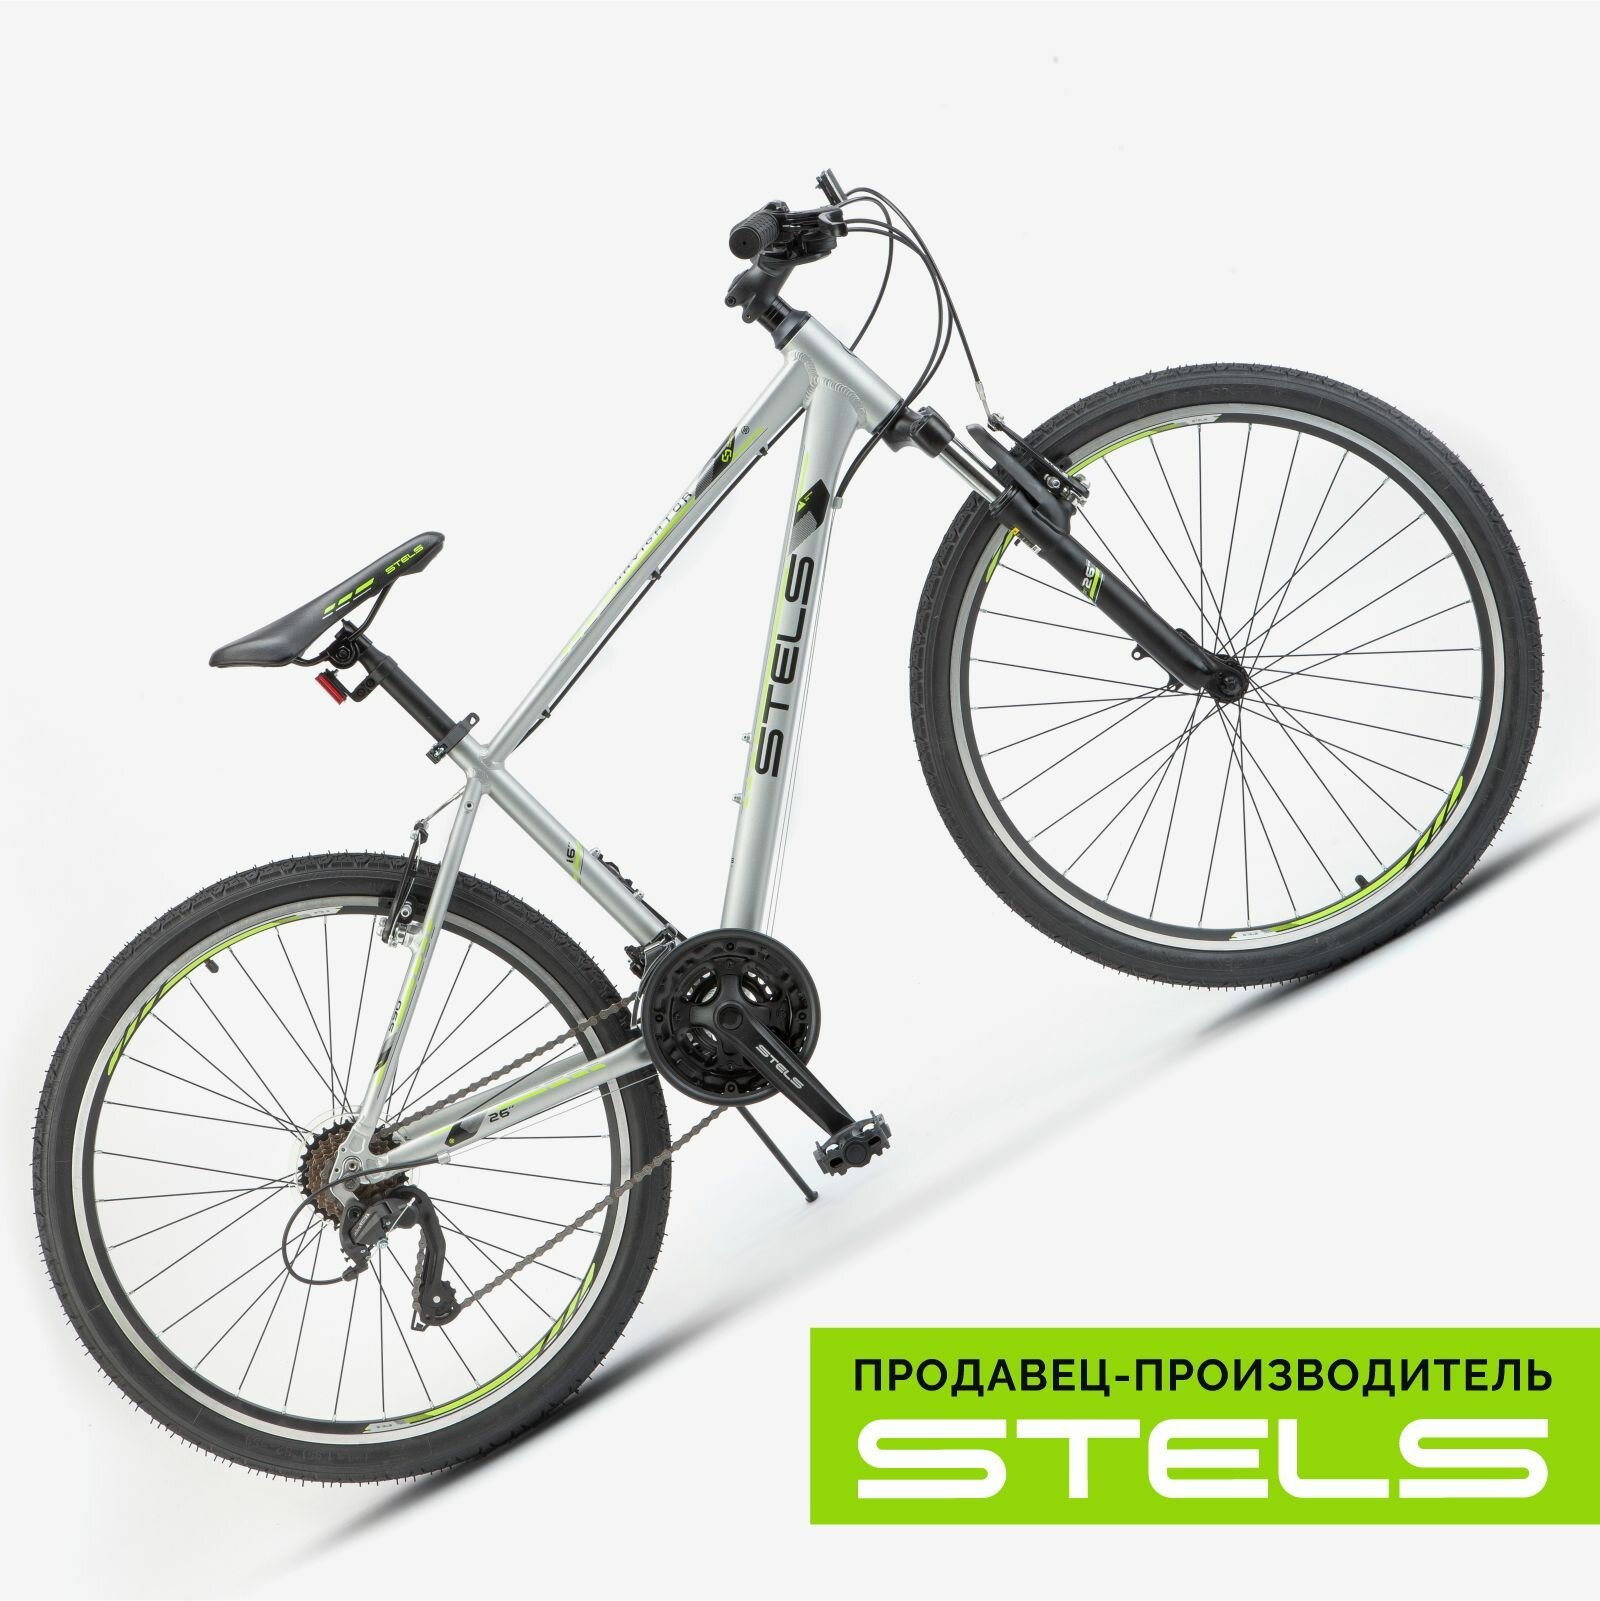 Велосипед горный Navigator-590 V 26" K010 16" Серый/салатовый